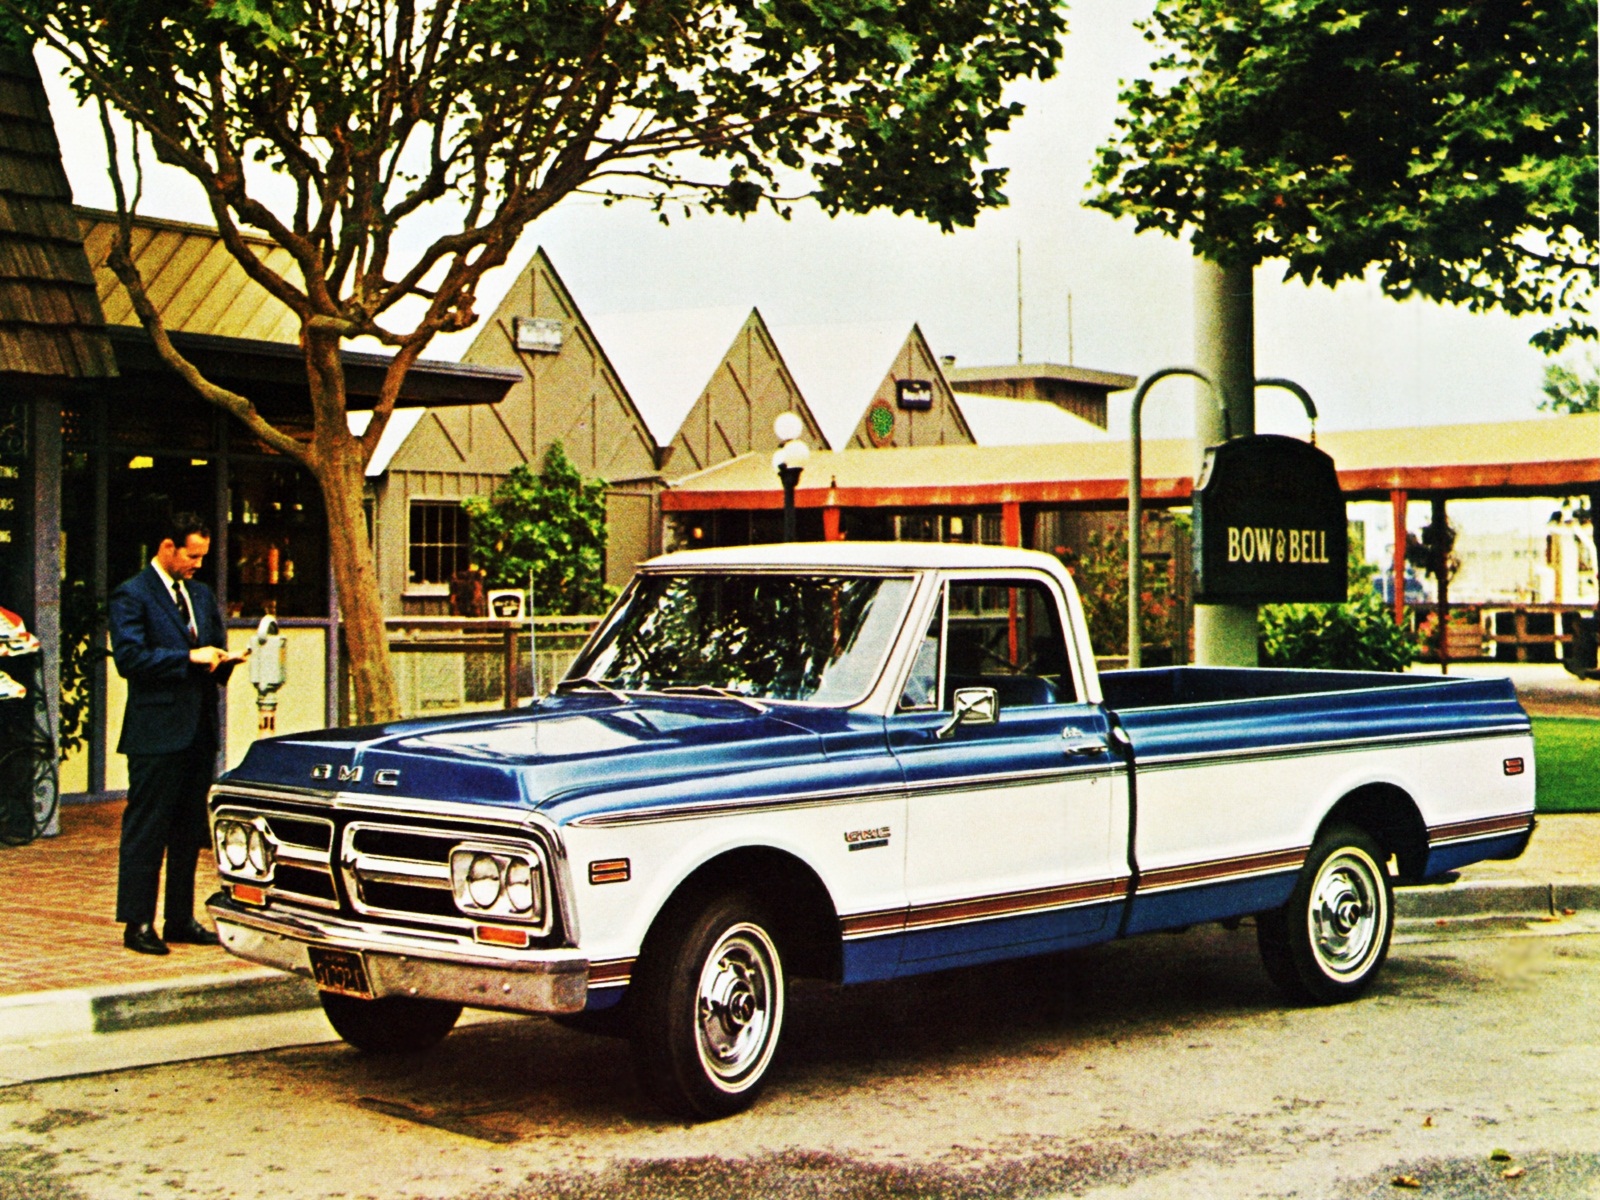 1974 GMC C1500 Pickup truck classic wallpaper 1600x1200 122960